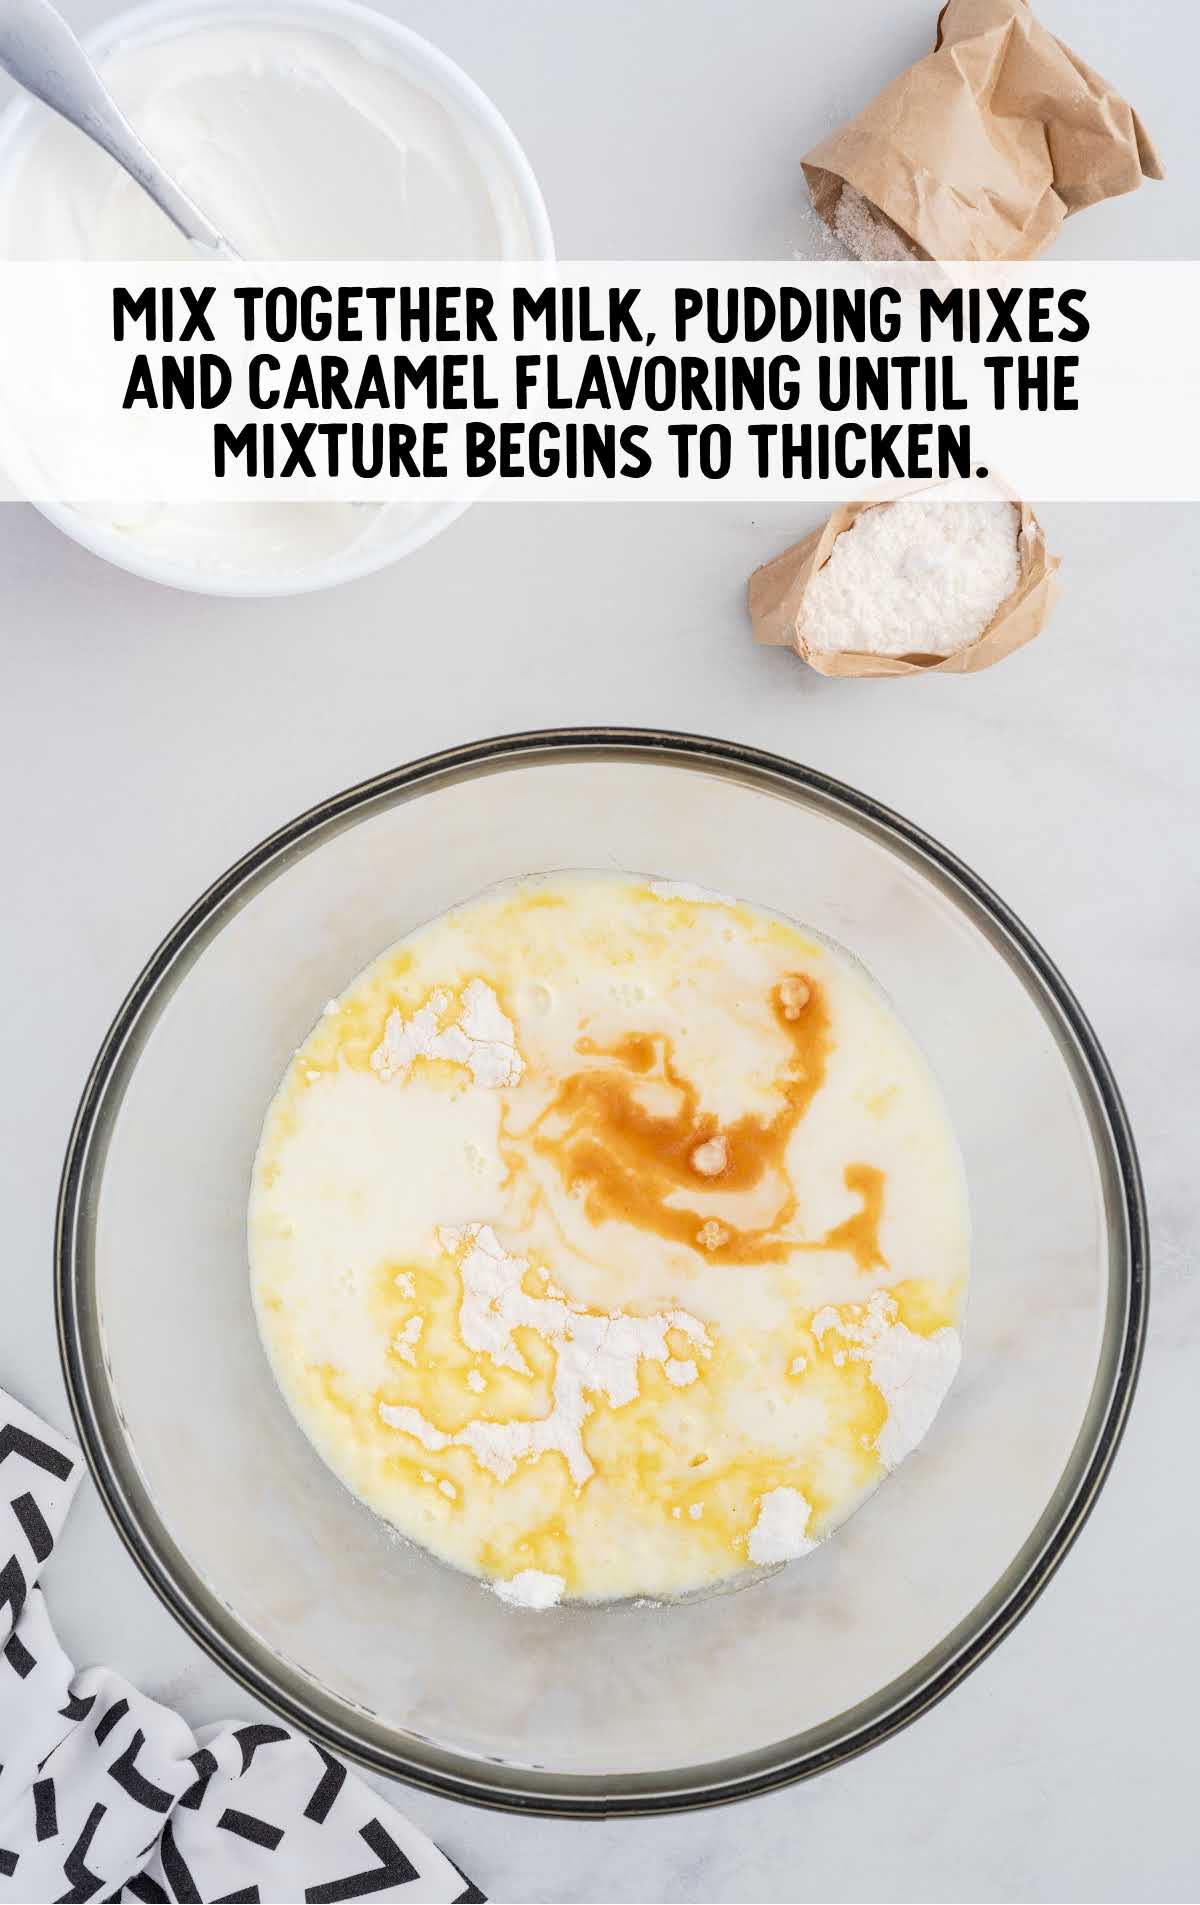 milk, pudding mixes and caramel mixed in a bowl